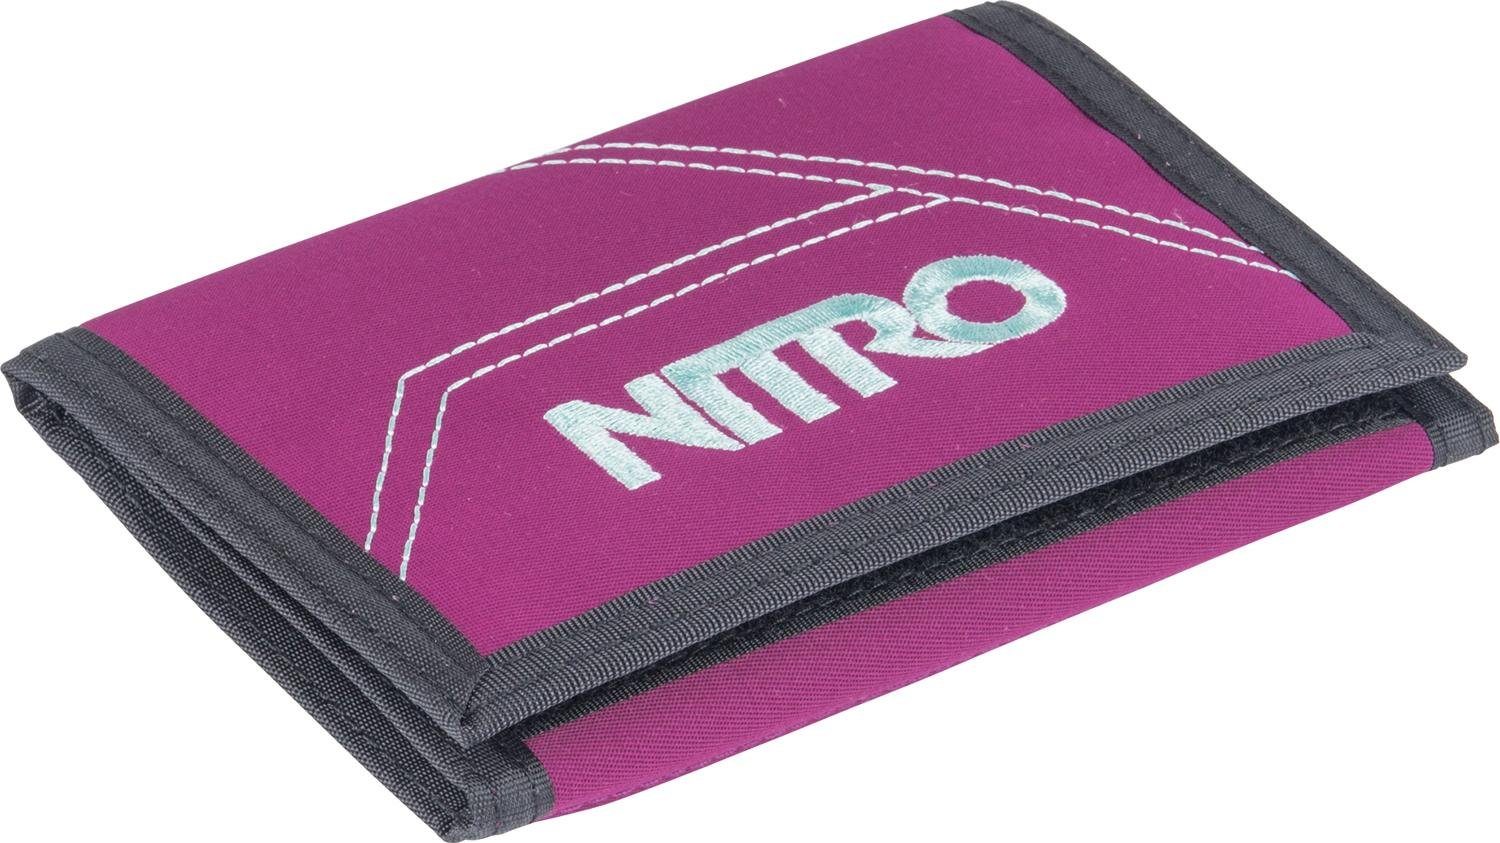 NITRO Geldbörse Wallet, Grateful Pink